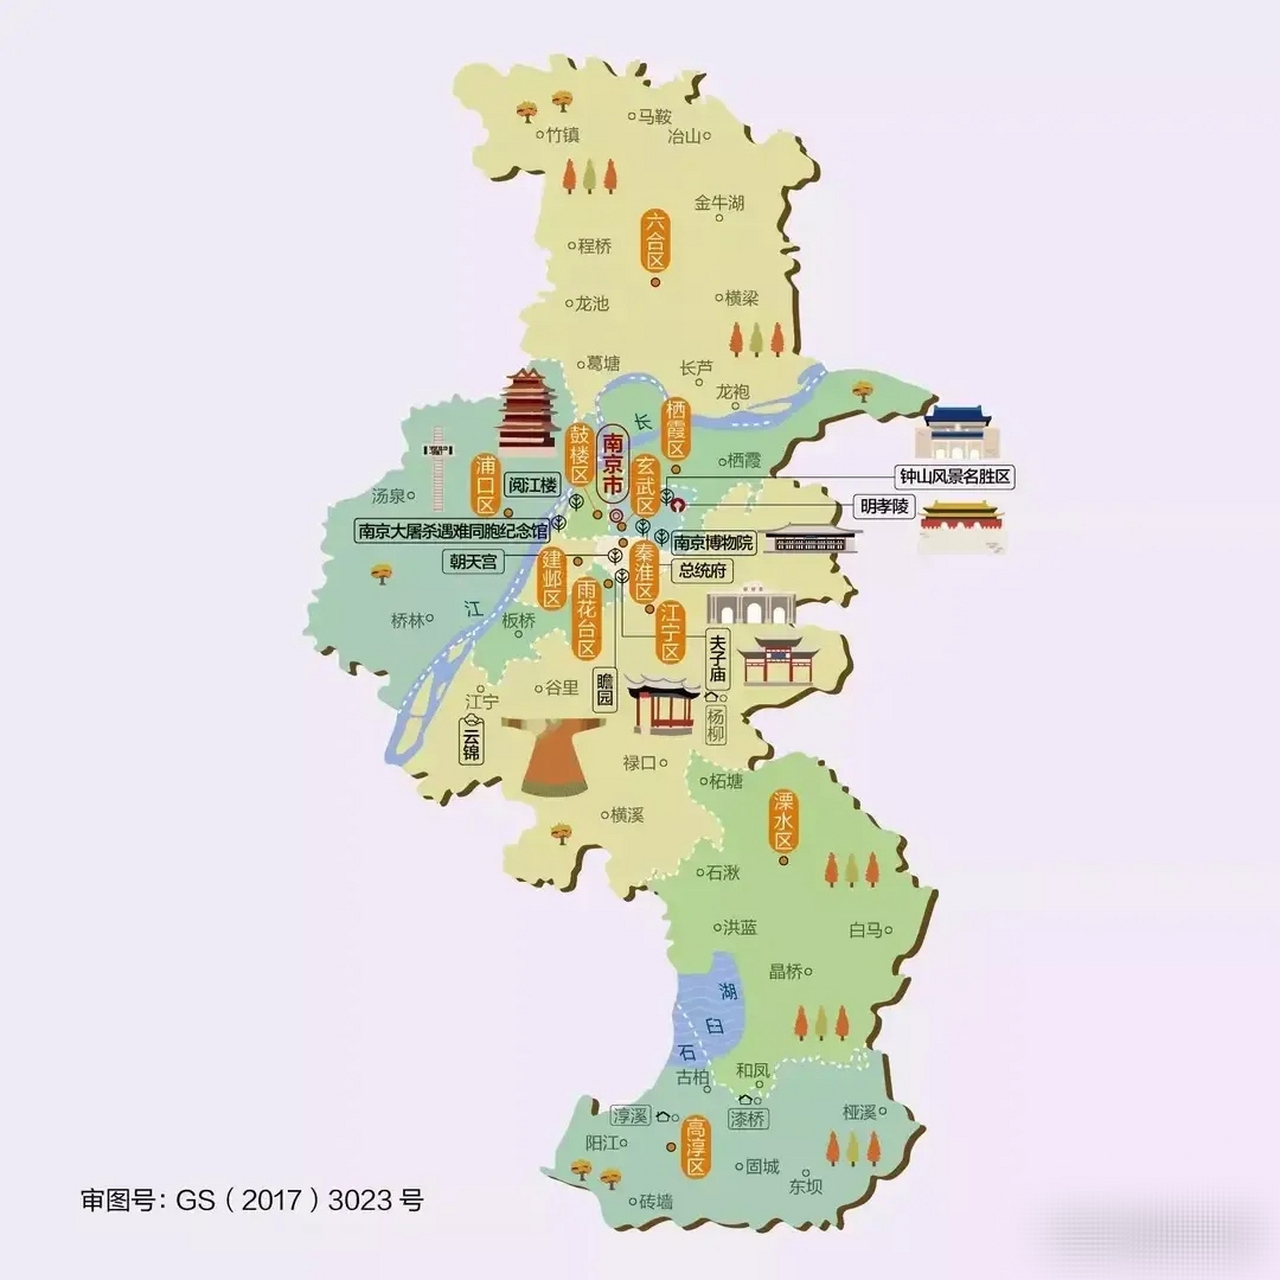 图一:南京地铁规划2035,果然厉害,南京将形成25条地铁,打造大南京都市